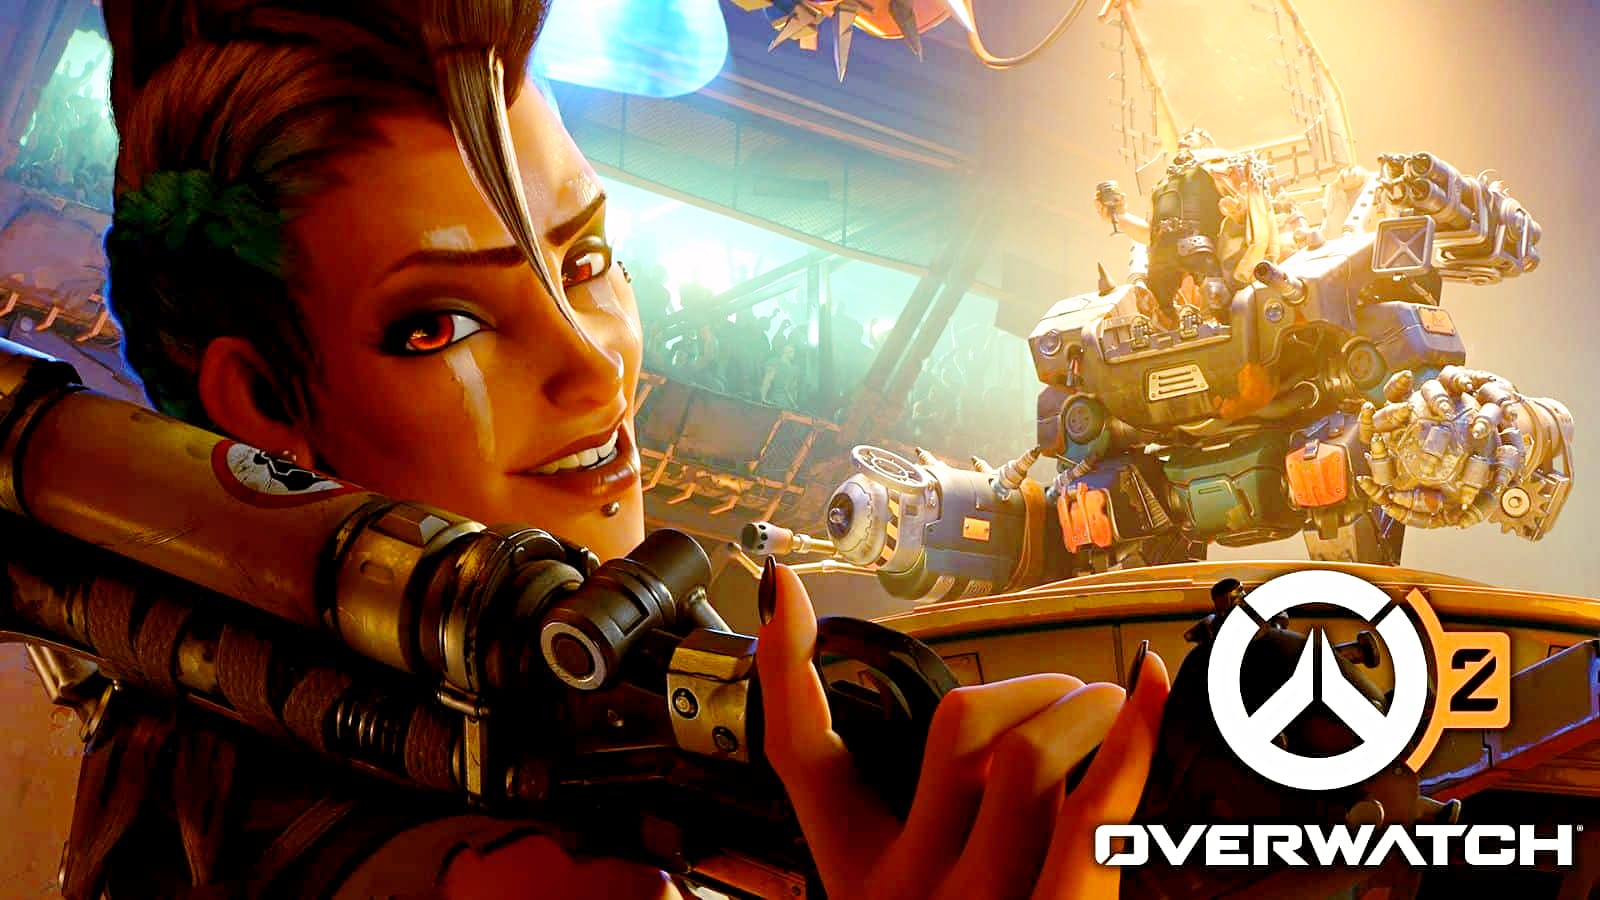 Junker Queen's abilities have been released ahead of the upcoming Overwatch 2 beta.